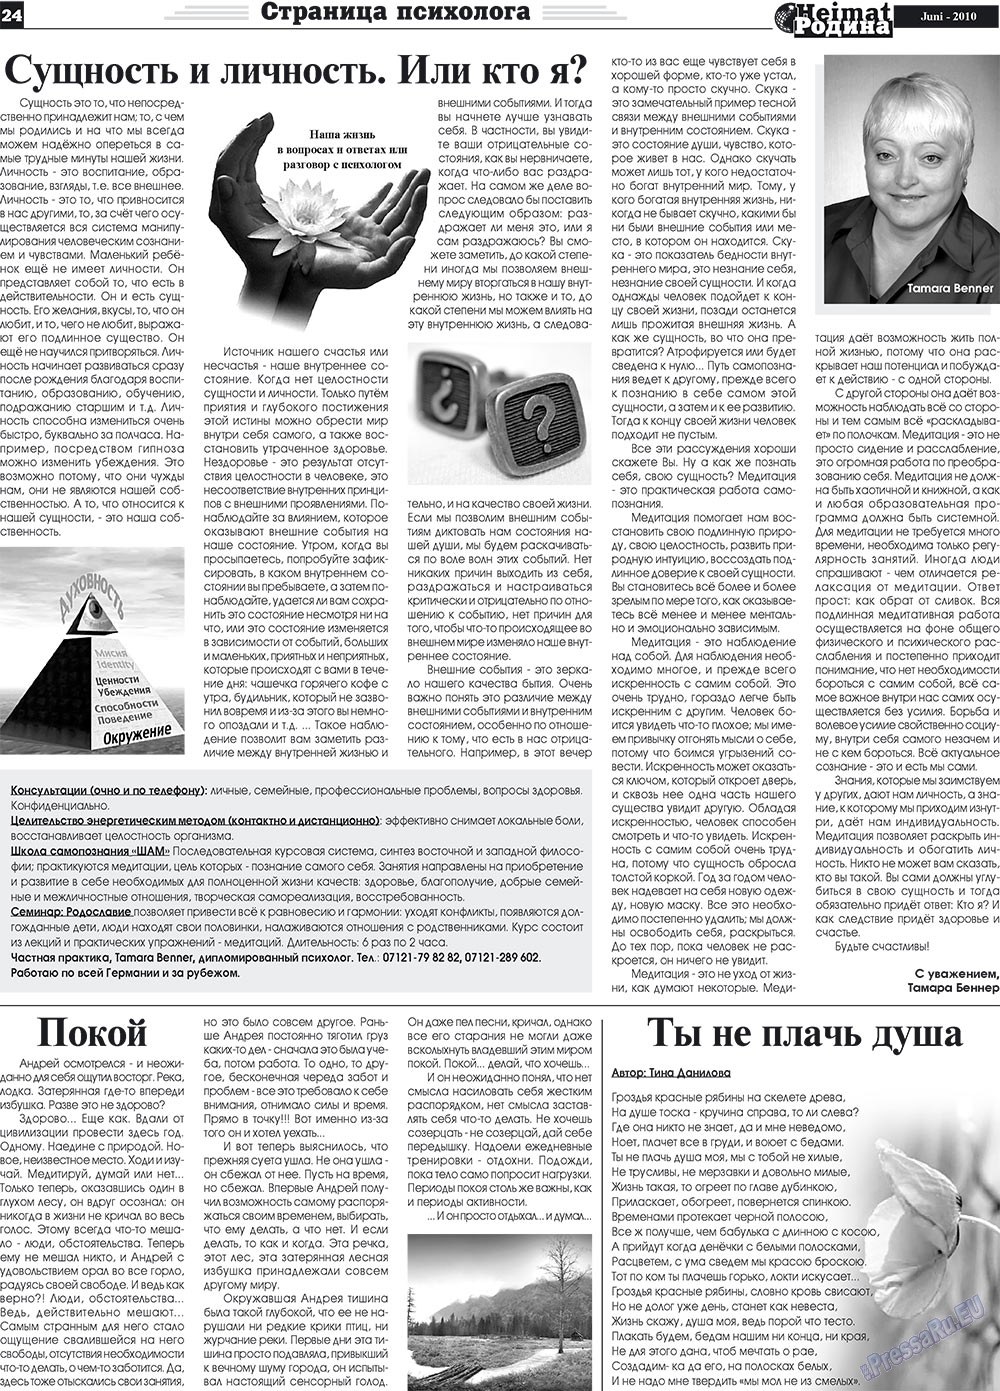 Heimat-Родина (газета). 2010 год, номер 6, стр. 24